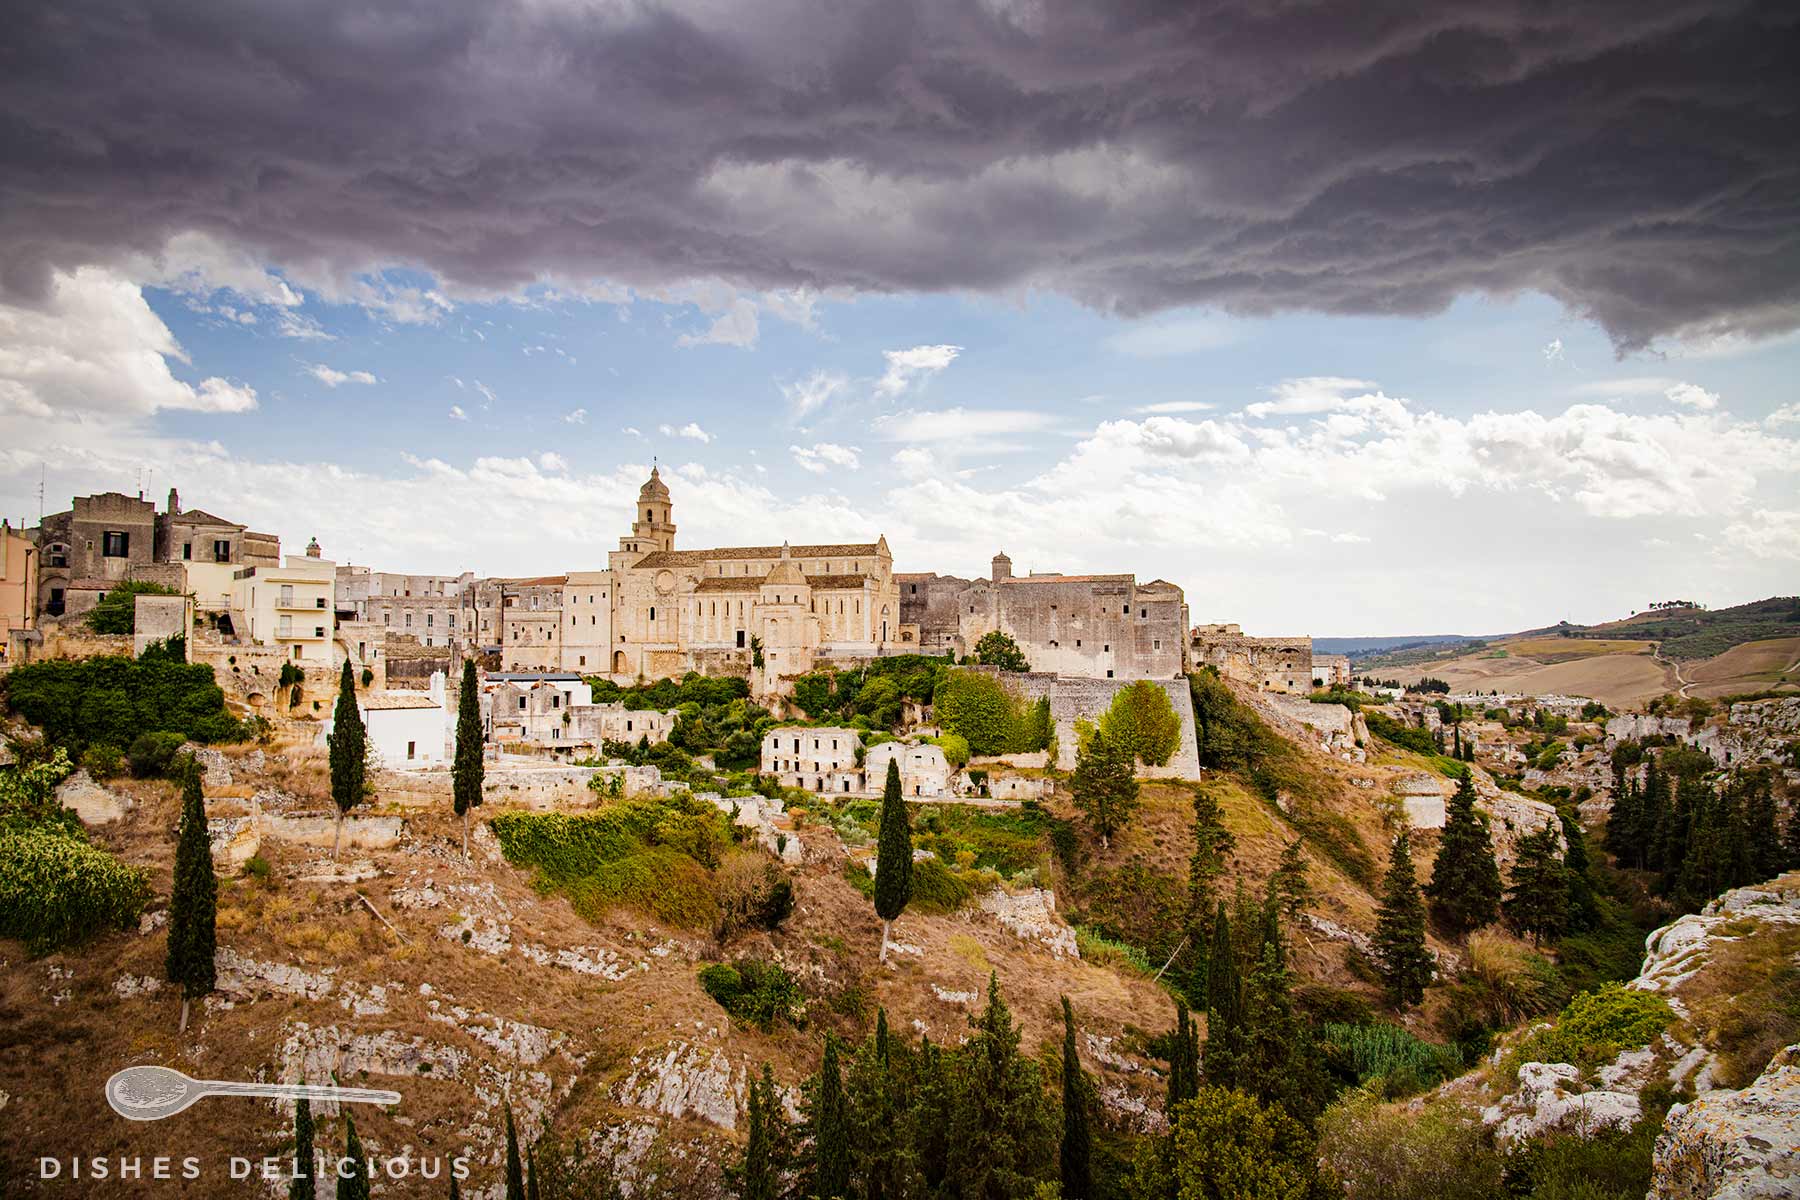 Die Kathedrale und Schlucht von Gravina, über der ein Gewitter mit dunklen Wolken aufzieht